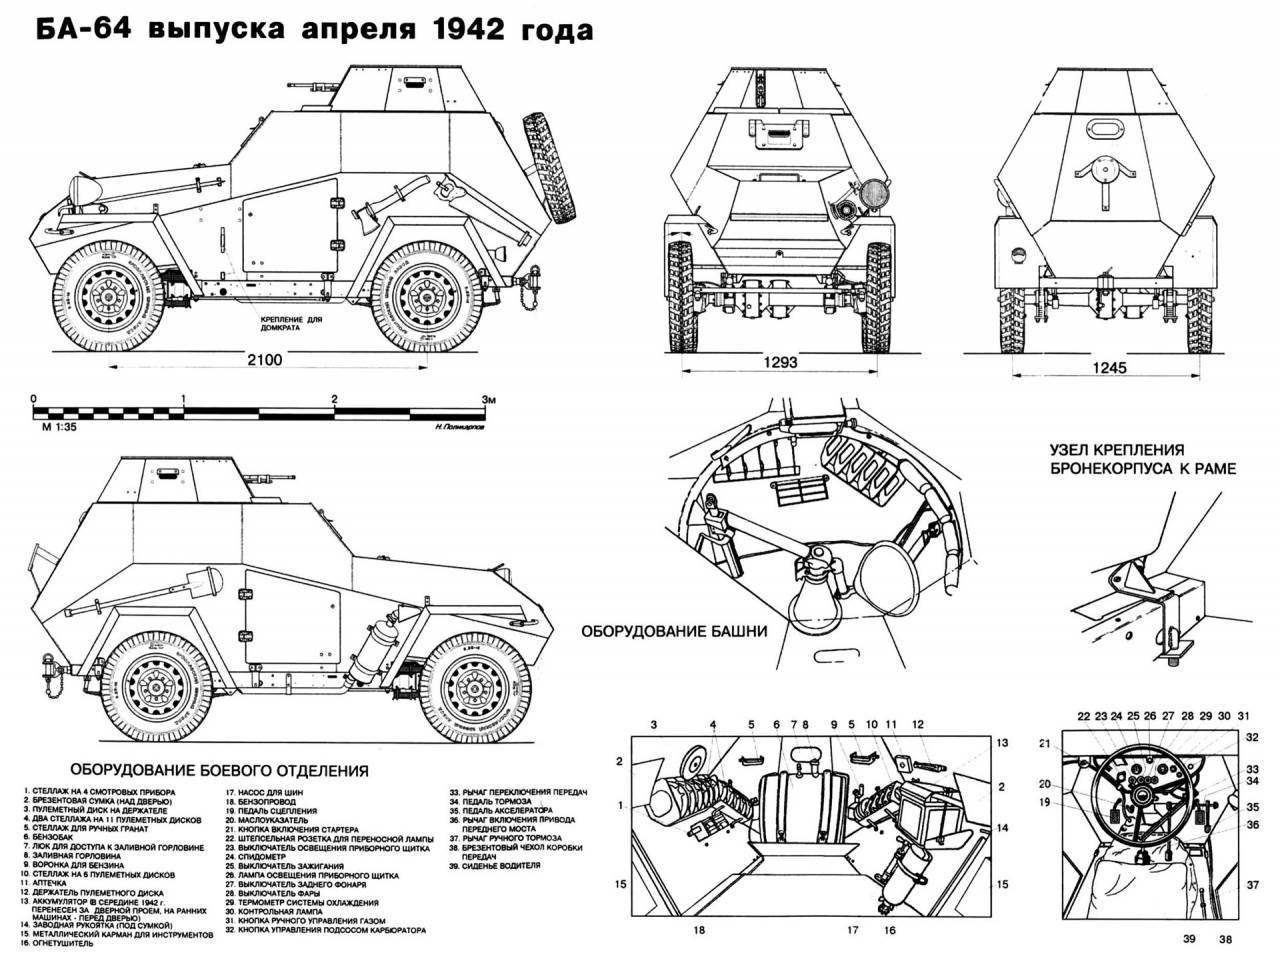 Ба-20: бронеавтомобиль, на базе м-1, конструкция, технические характеристики, боевое применение, вооружение